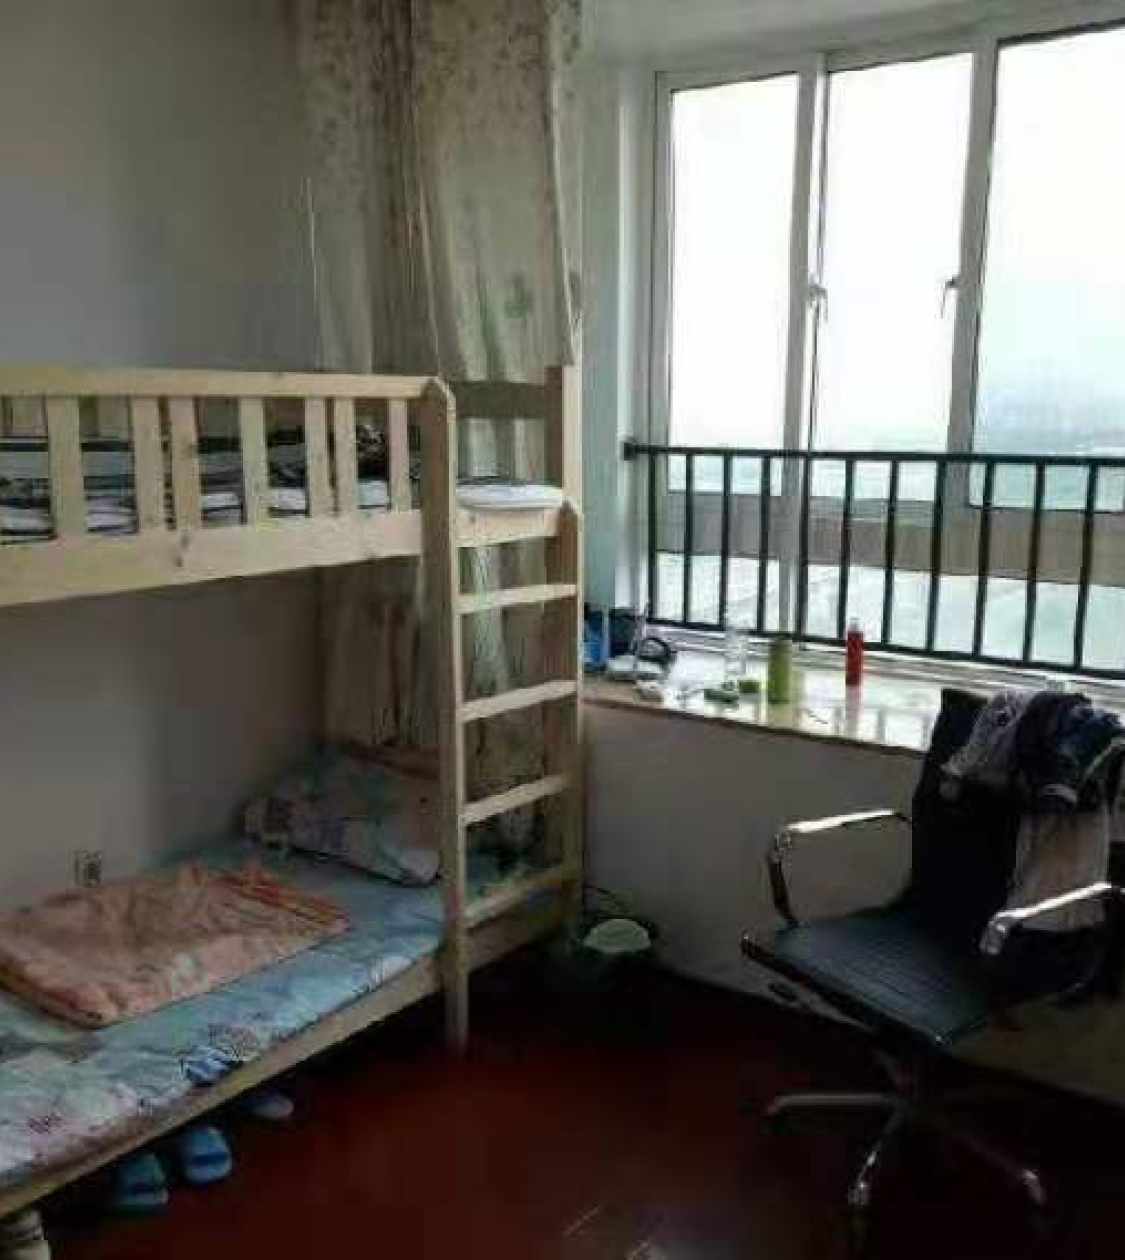 【自如寓】服务式公寓_北京单身公寓|青年公寓_北京青年公寓|单身公寓出租